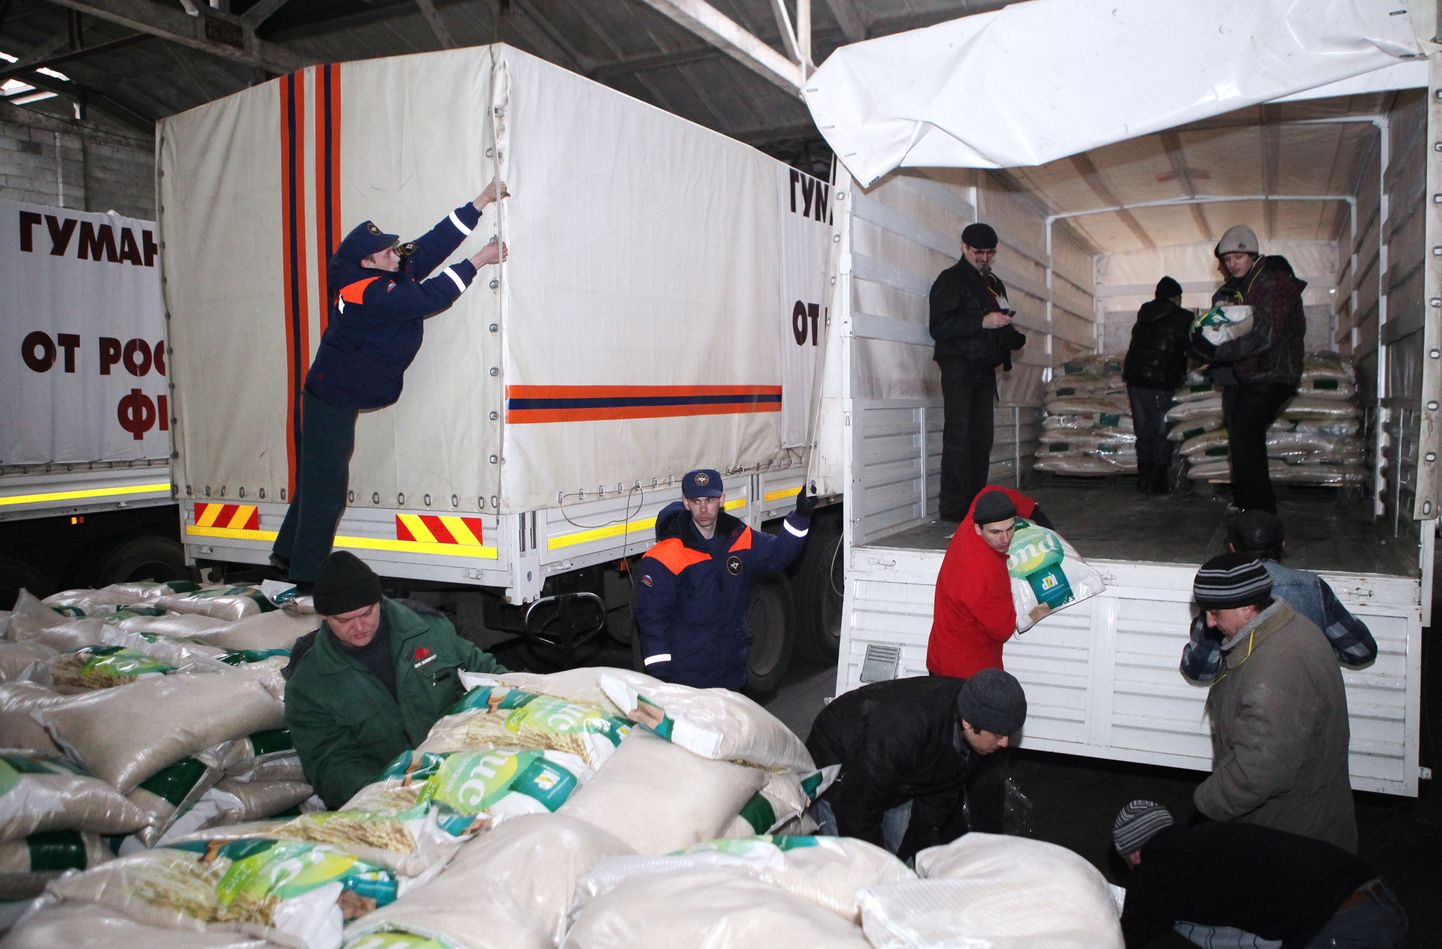 Venemaa saadetud veoautode tühjaks laadimine. Ukraina teatel ei tooda nendega riiki mitte ainult humanitaarabi.